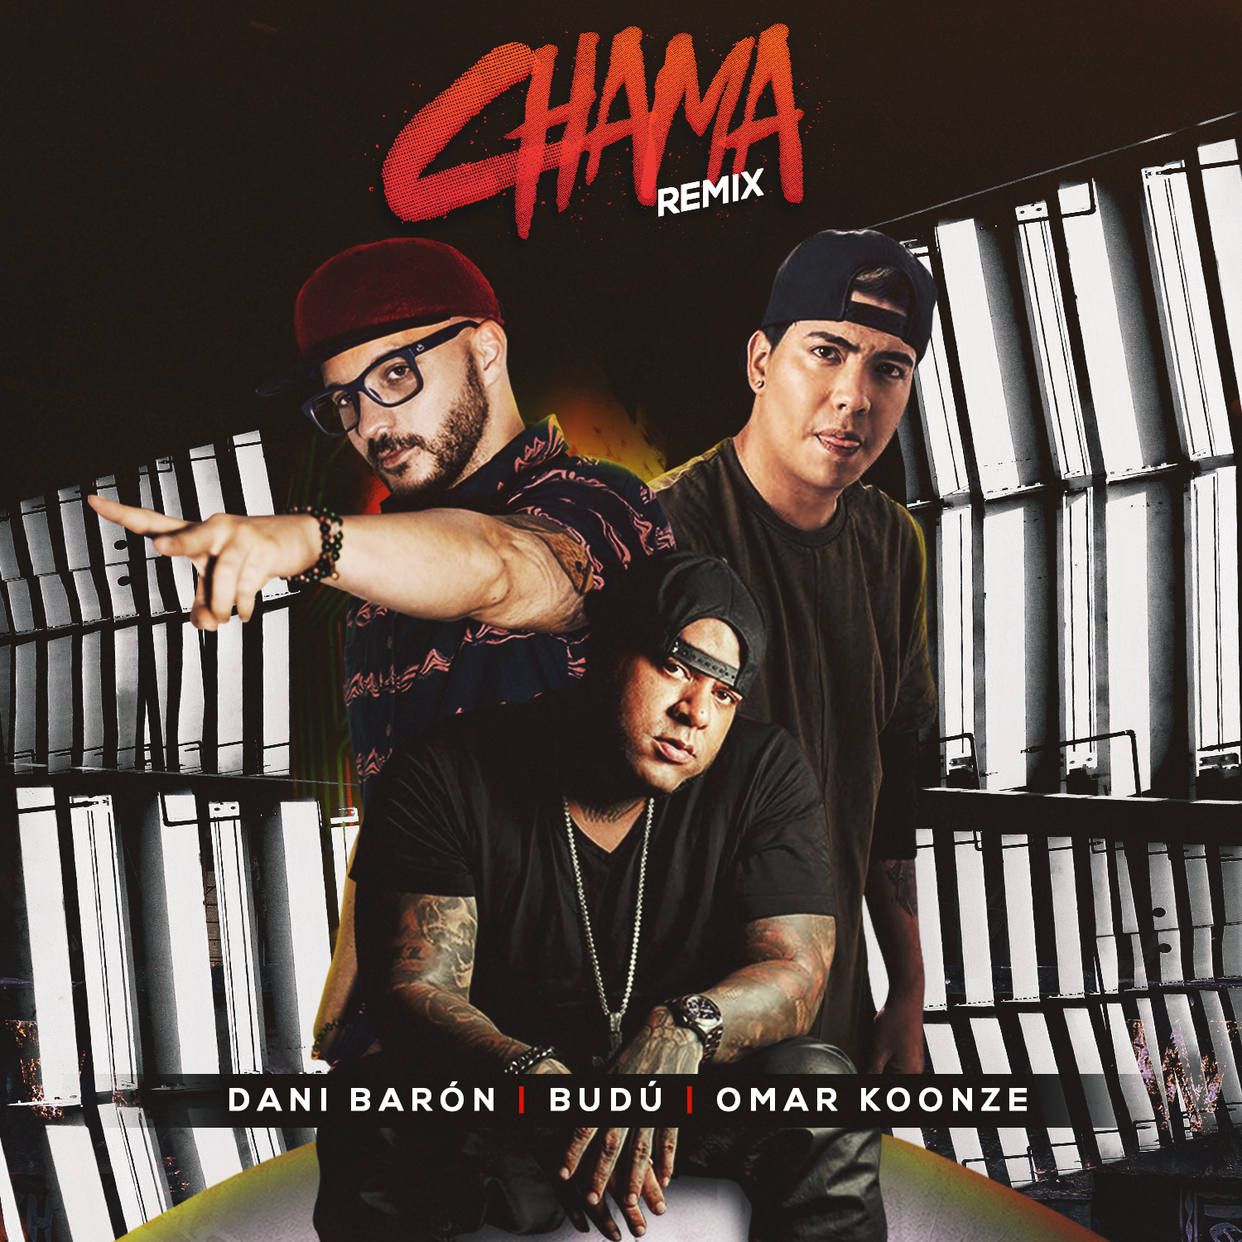 Dani Barón si unió a Budú para el remix de “Chama”. Cusica Plus.